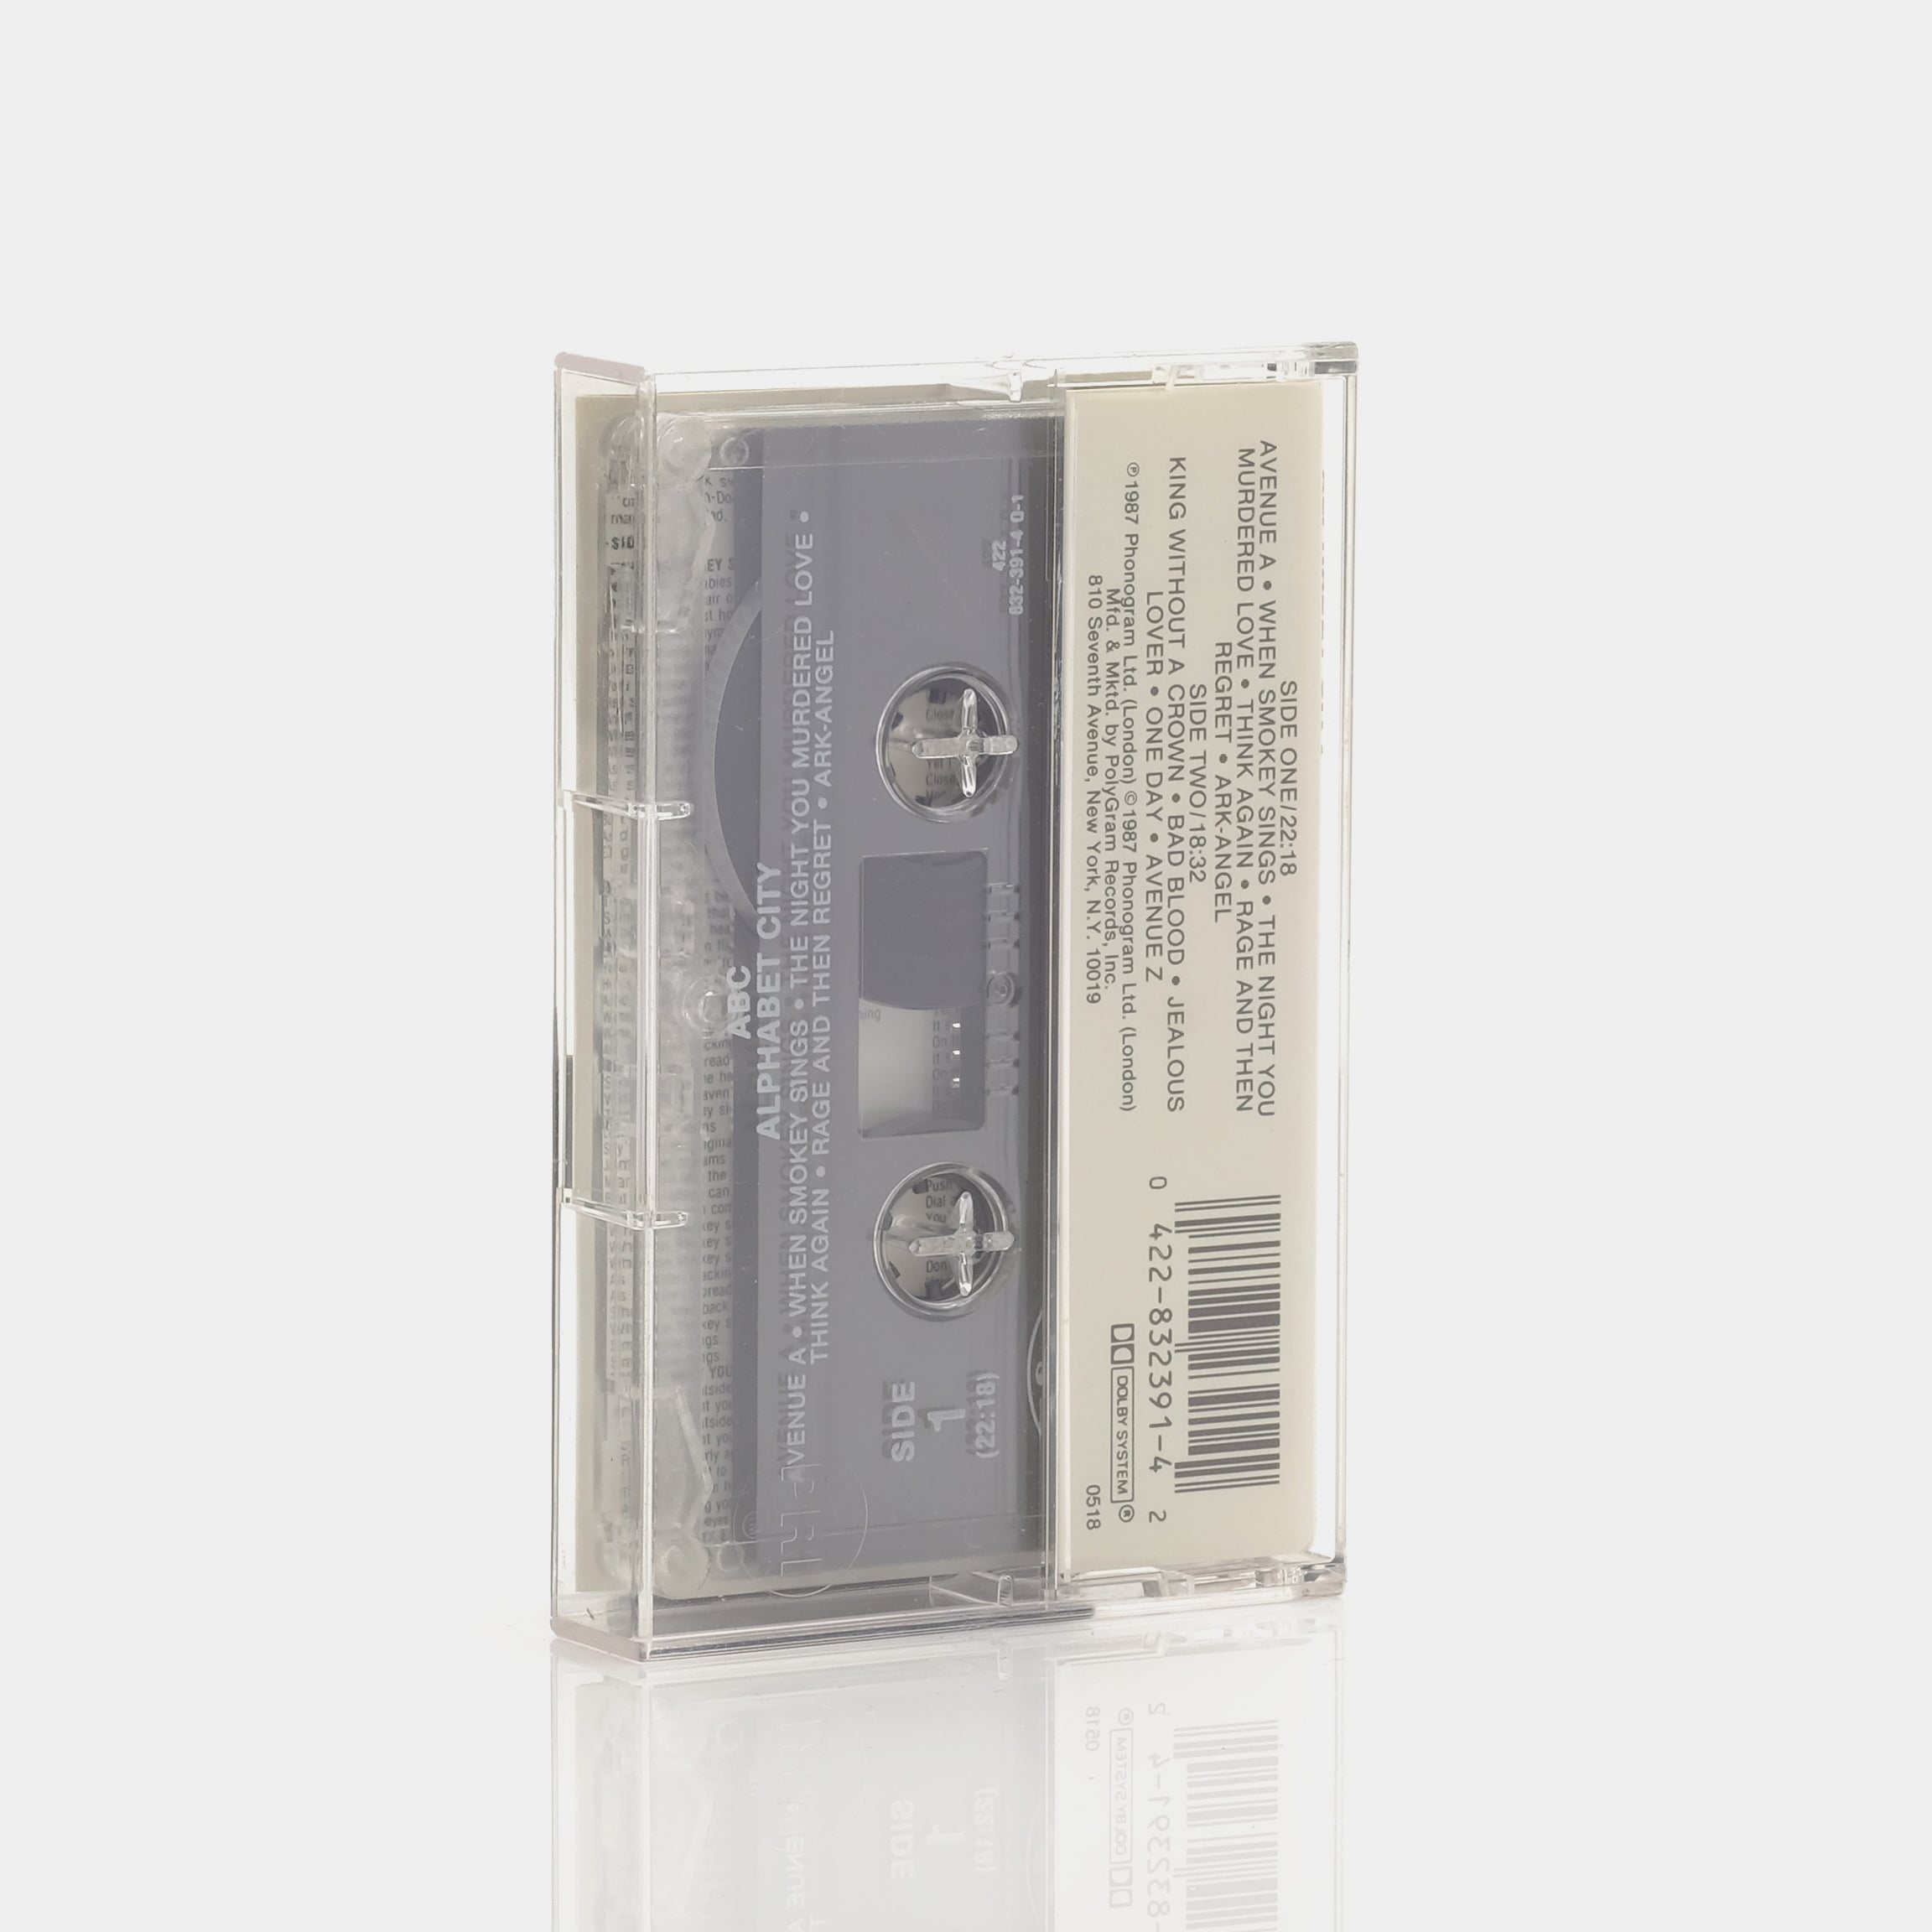 ABC - Alphabet City Cassette Tape